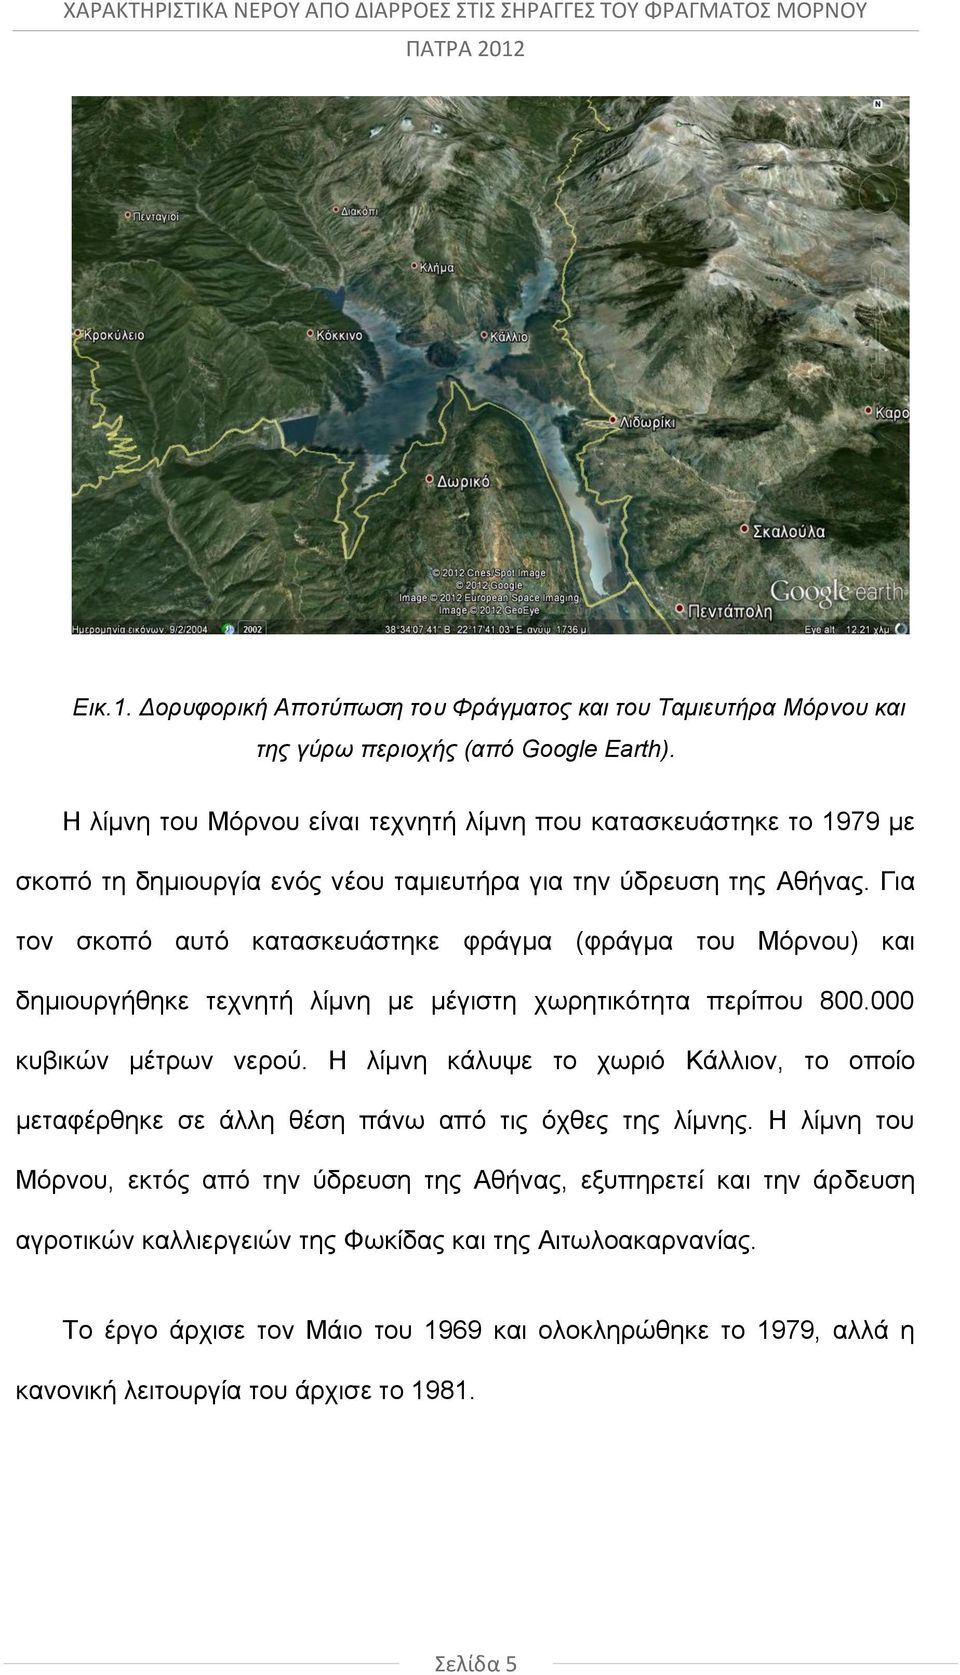 Για τον σκοπό αυτό κατασκευάστηκε φράγμα (φράγμα του Μόρνου) και δημιουργήθηκε τεχνητή λίμνη με μέγιστη χωρητικότητα περίπου 800.000 κυβικών μέτρων νερού.